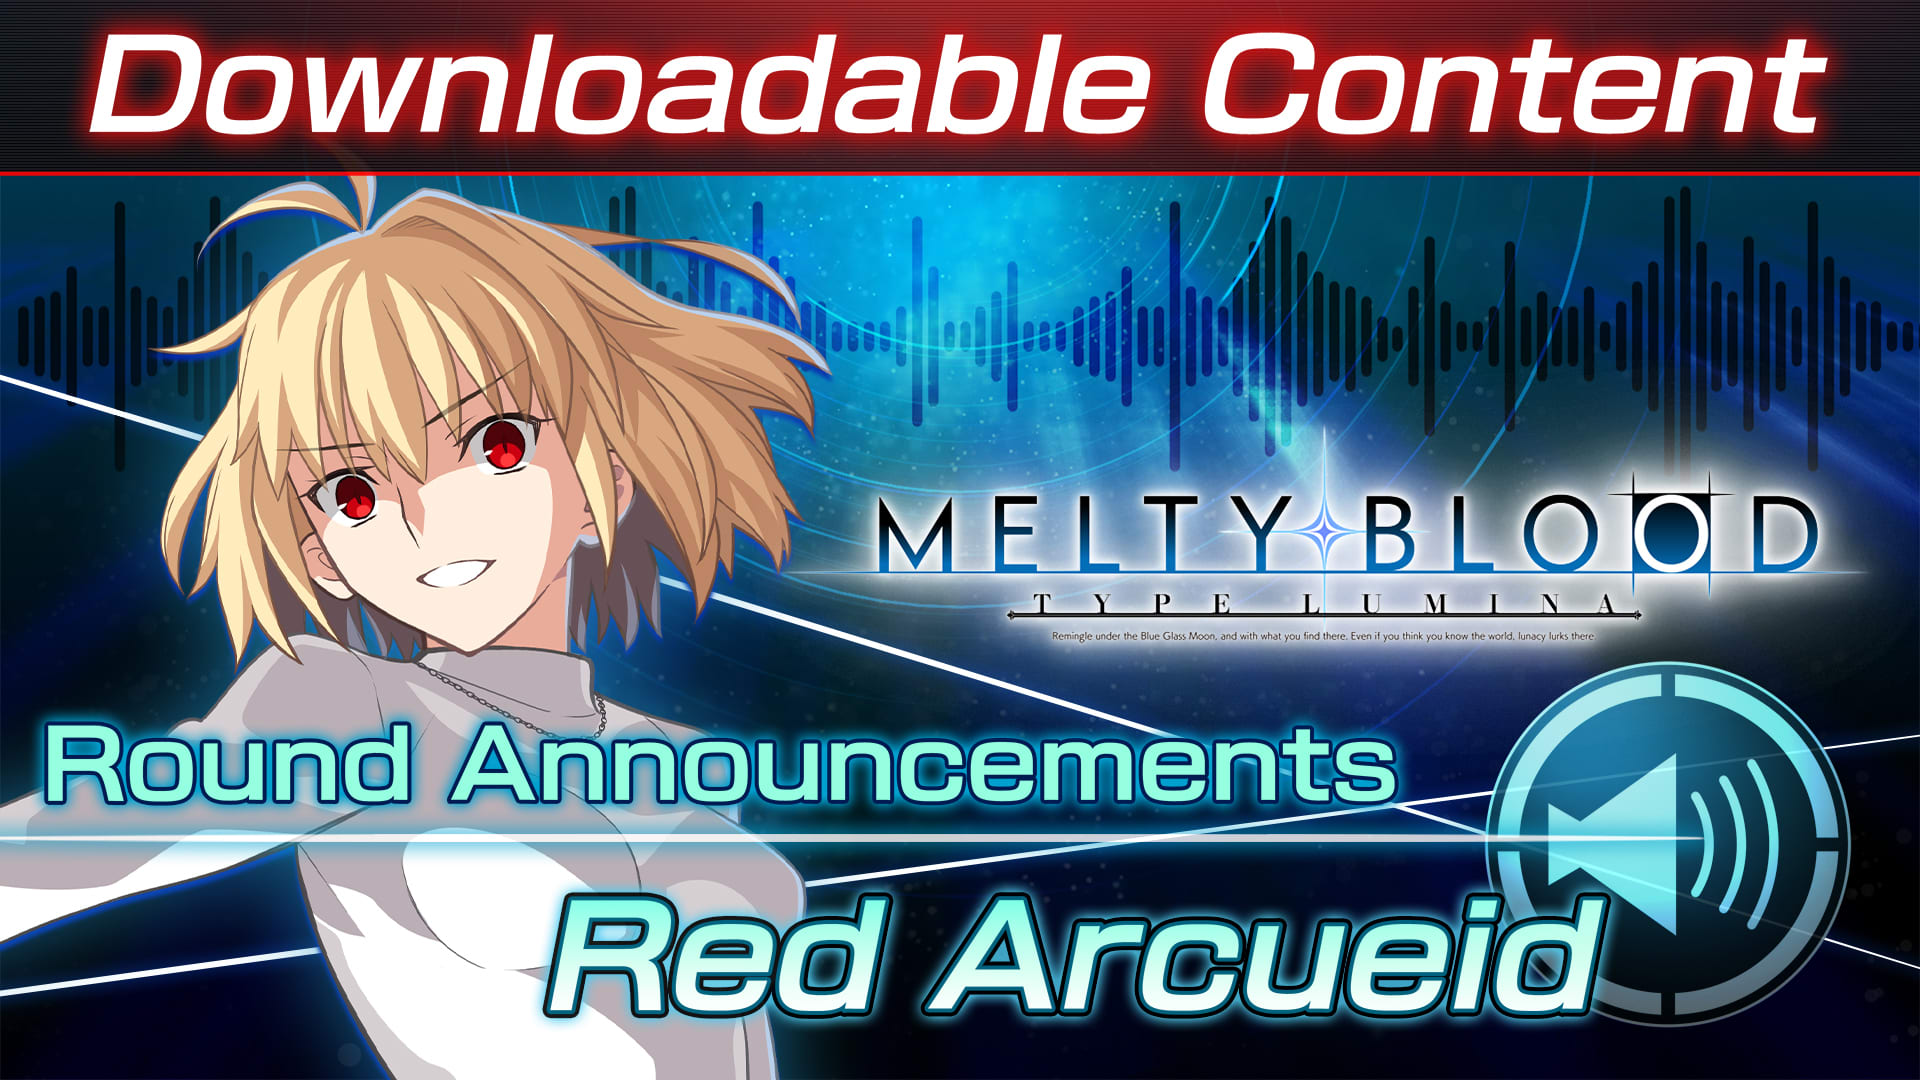 Contenido adicional: "Red Arcueid Round Announcements"